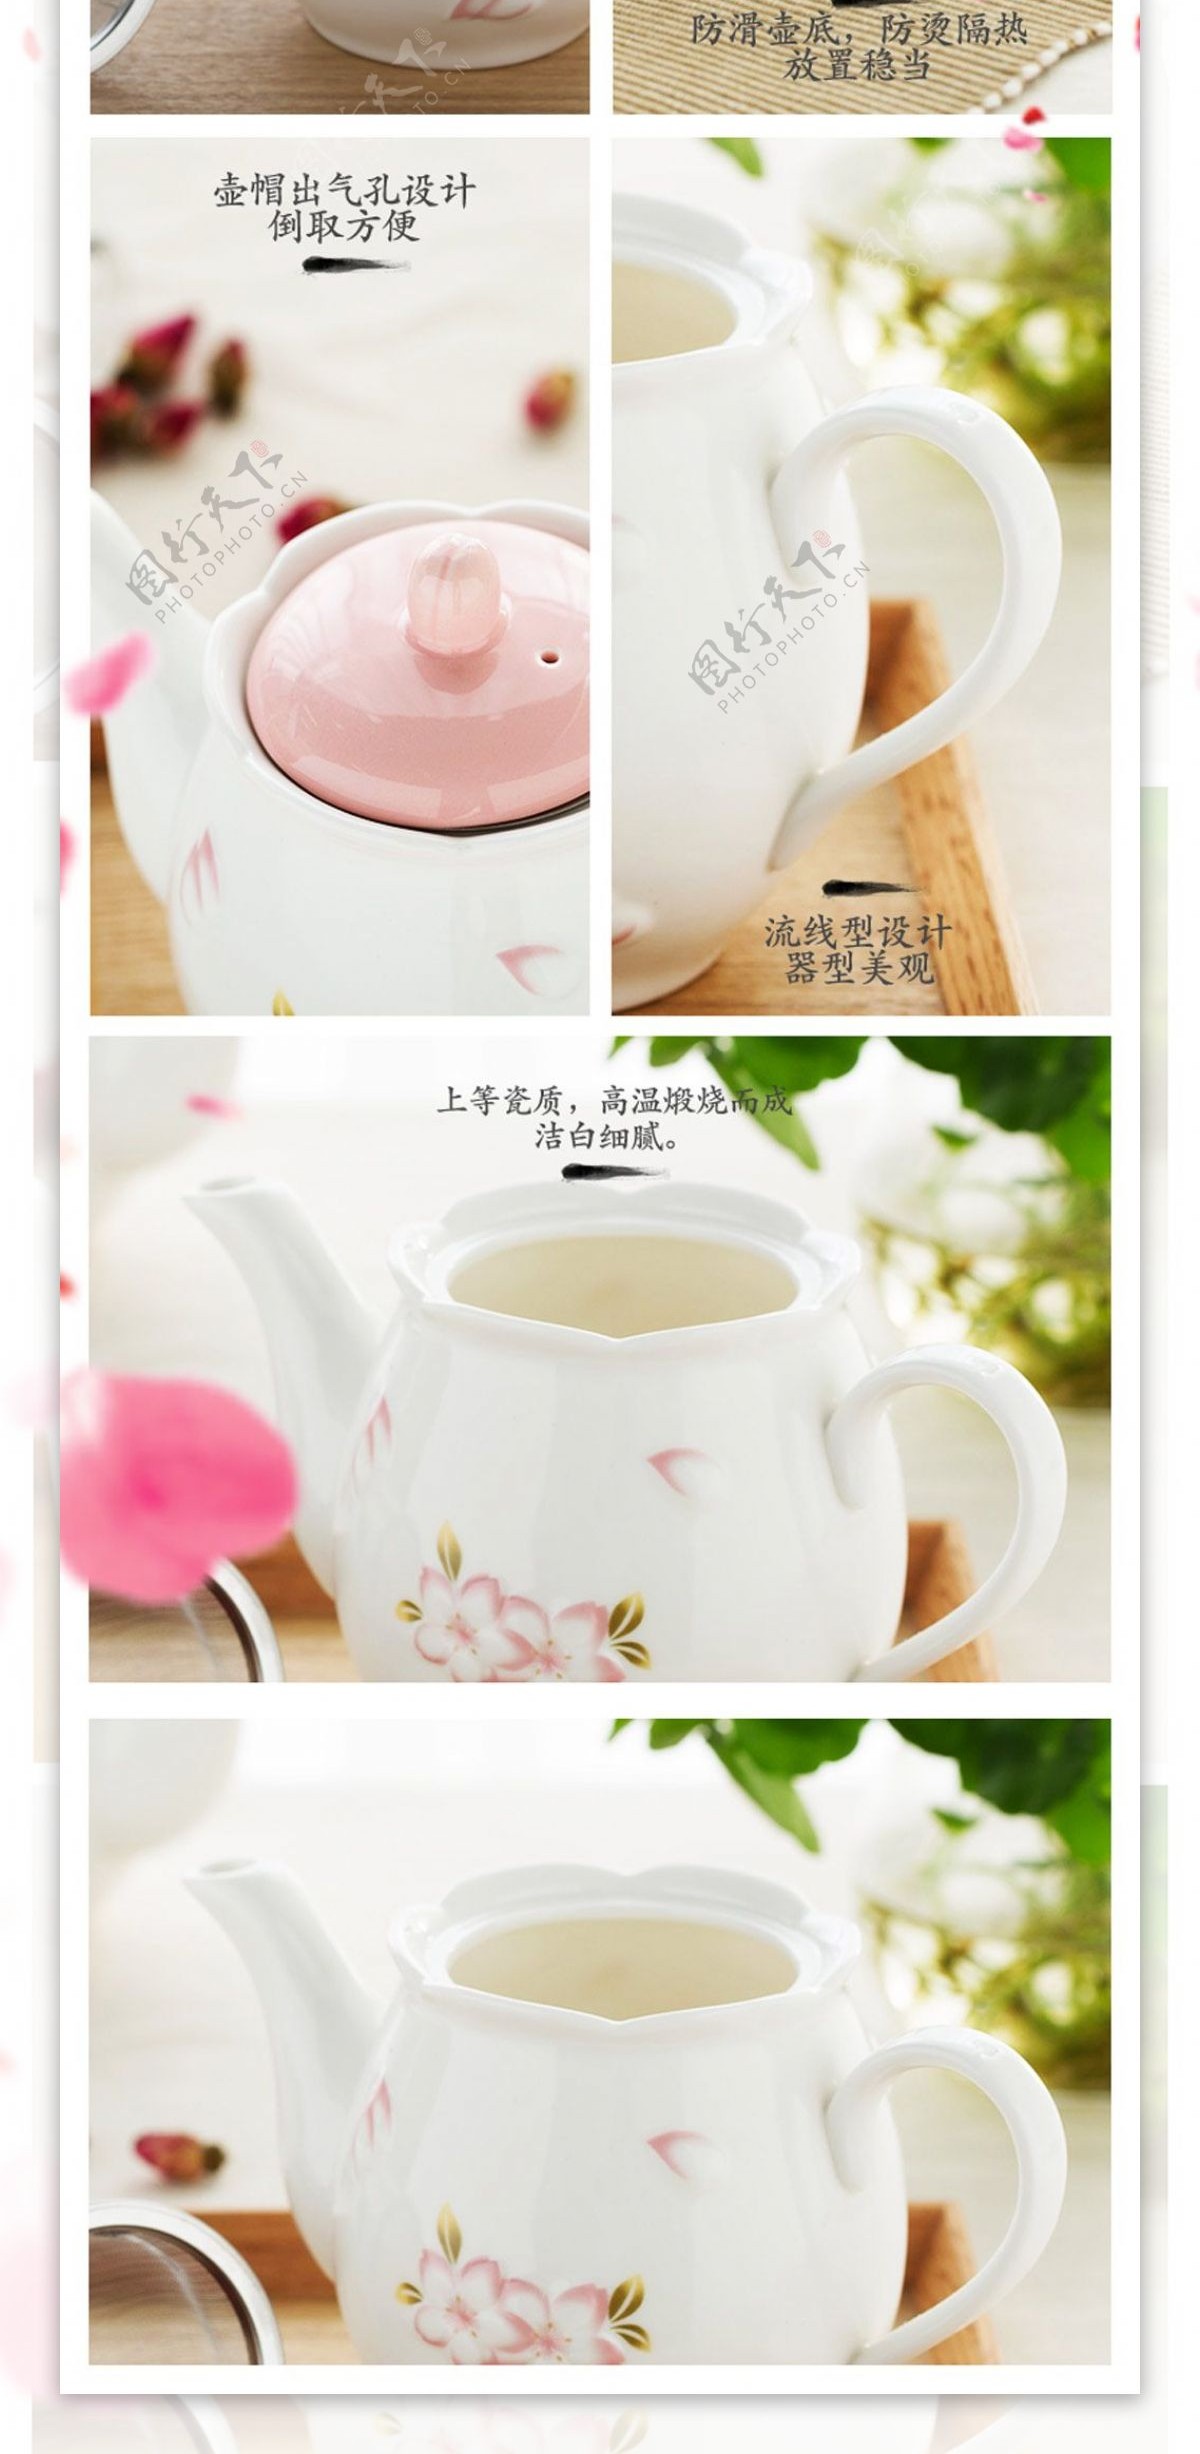 粉色茶壶家居用品温馨电商淘宝天猫详情页模板樱花